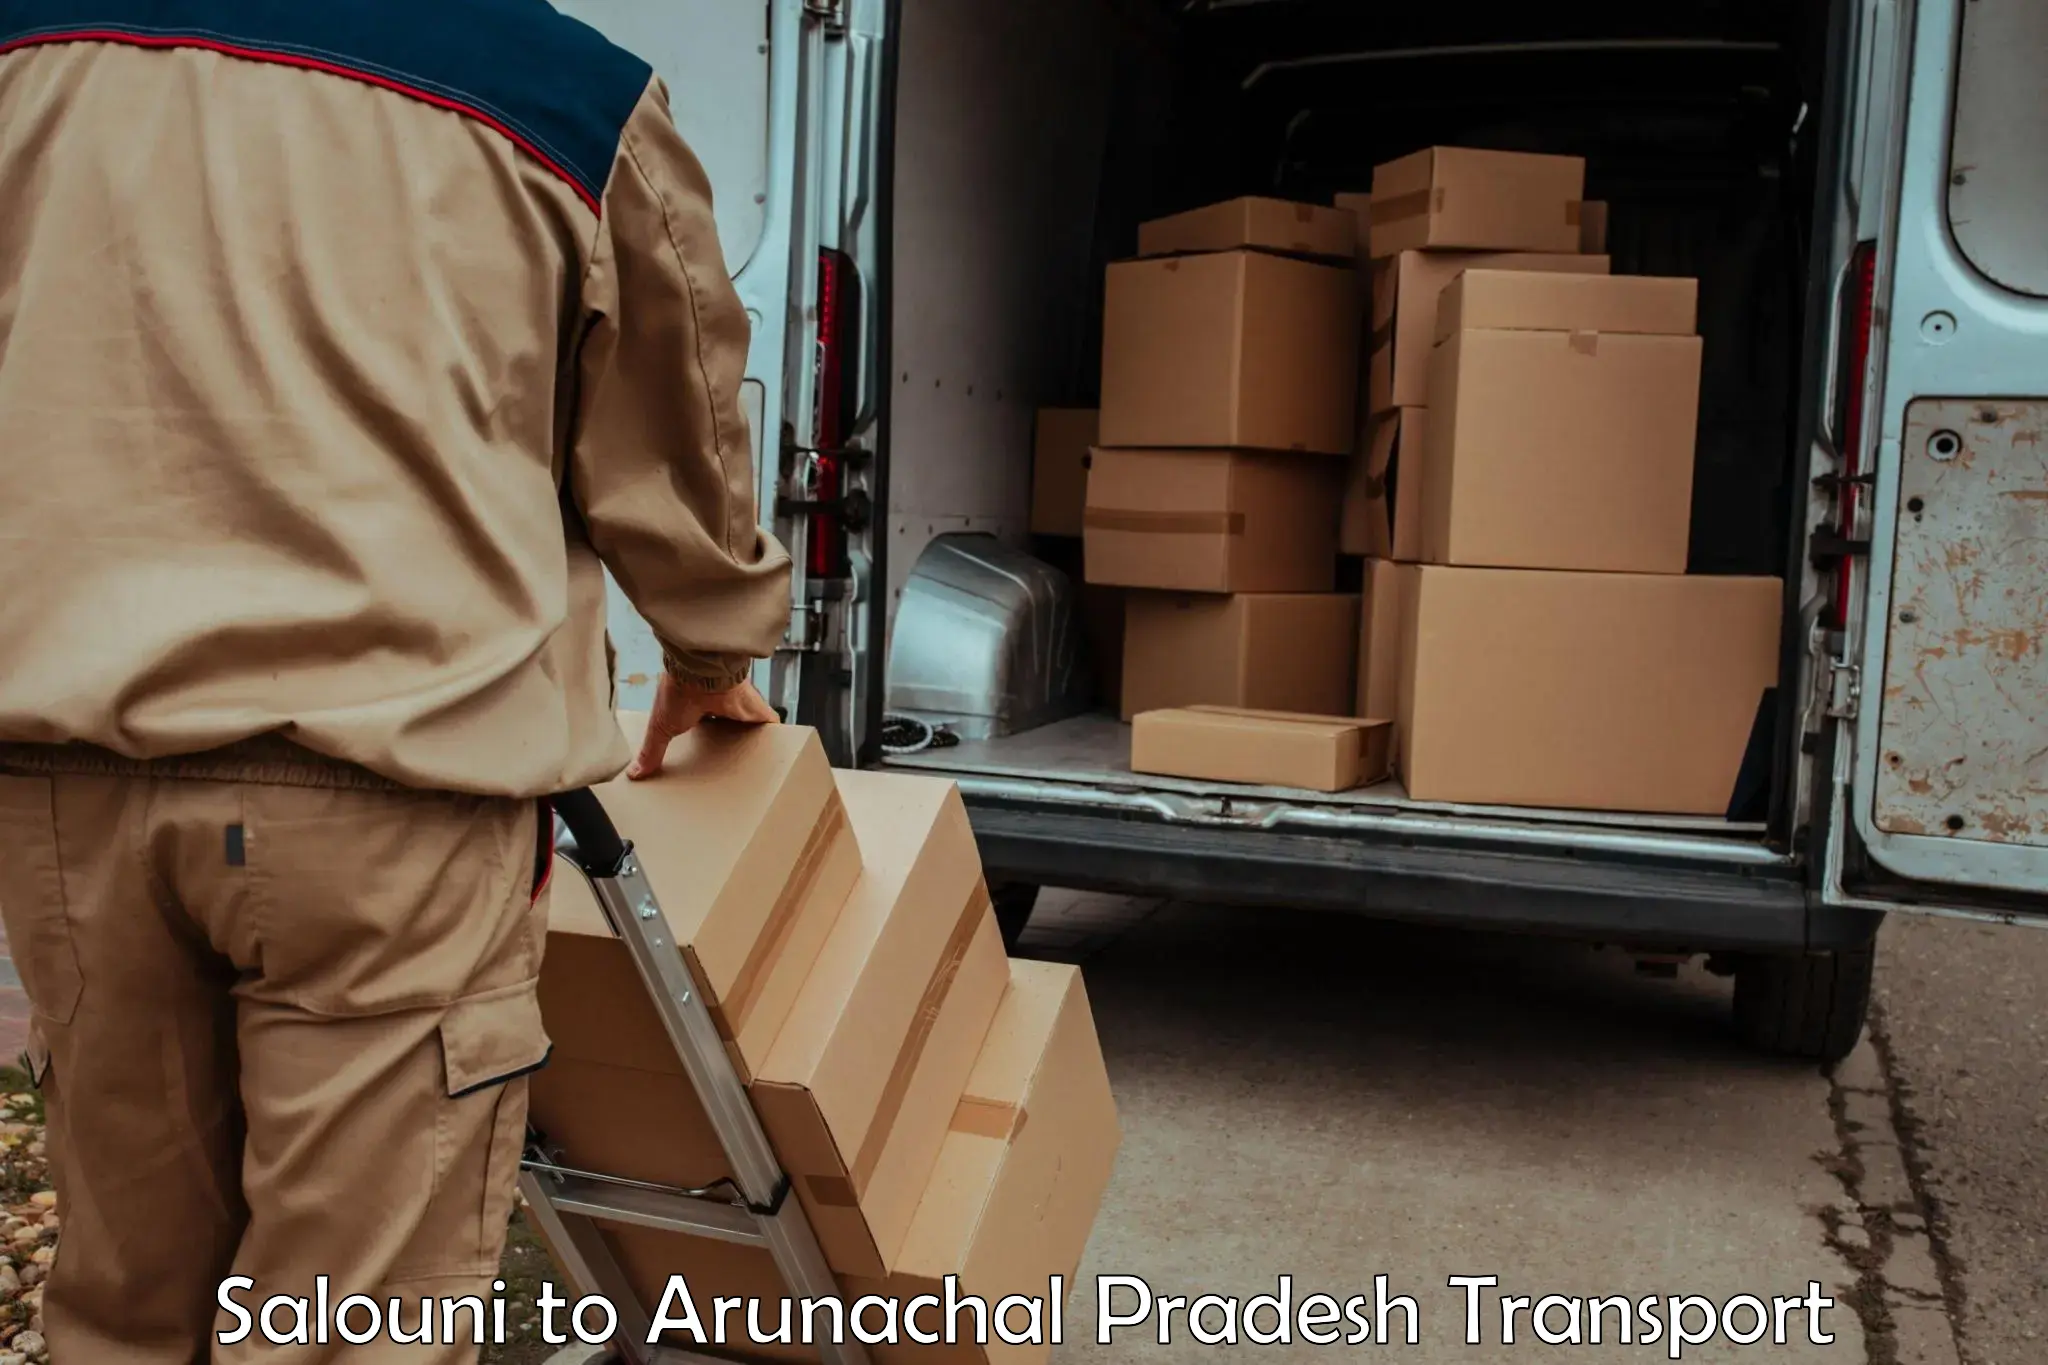 Daily transport service Salouni to Arunachal Pradesh